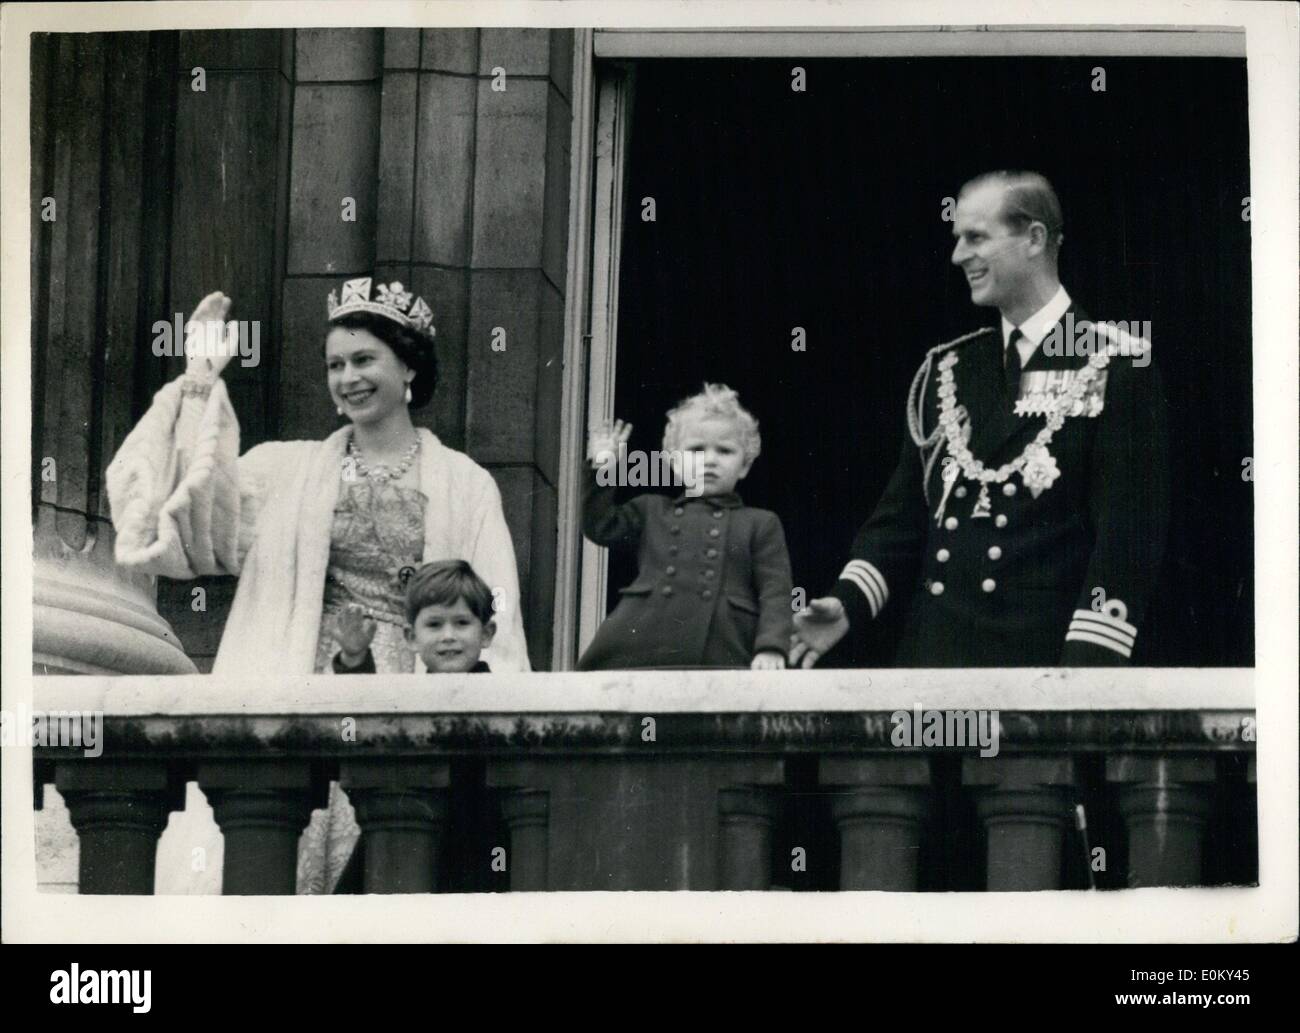 11 novembre 1952 - Ouverture du Parlement de l'État.. La Famille royale sur le balcon : Photo montre de Sa Majesté la Reine ; Duc Édimbourg ; le Prince Charles et la Princesse Anne sur le balcon du palais - après l'ouverture du parlement de l'état cet après-midi. Banque D'Images